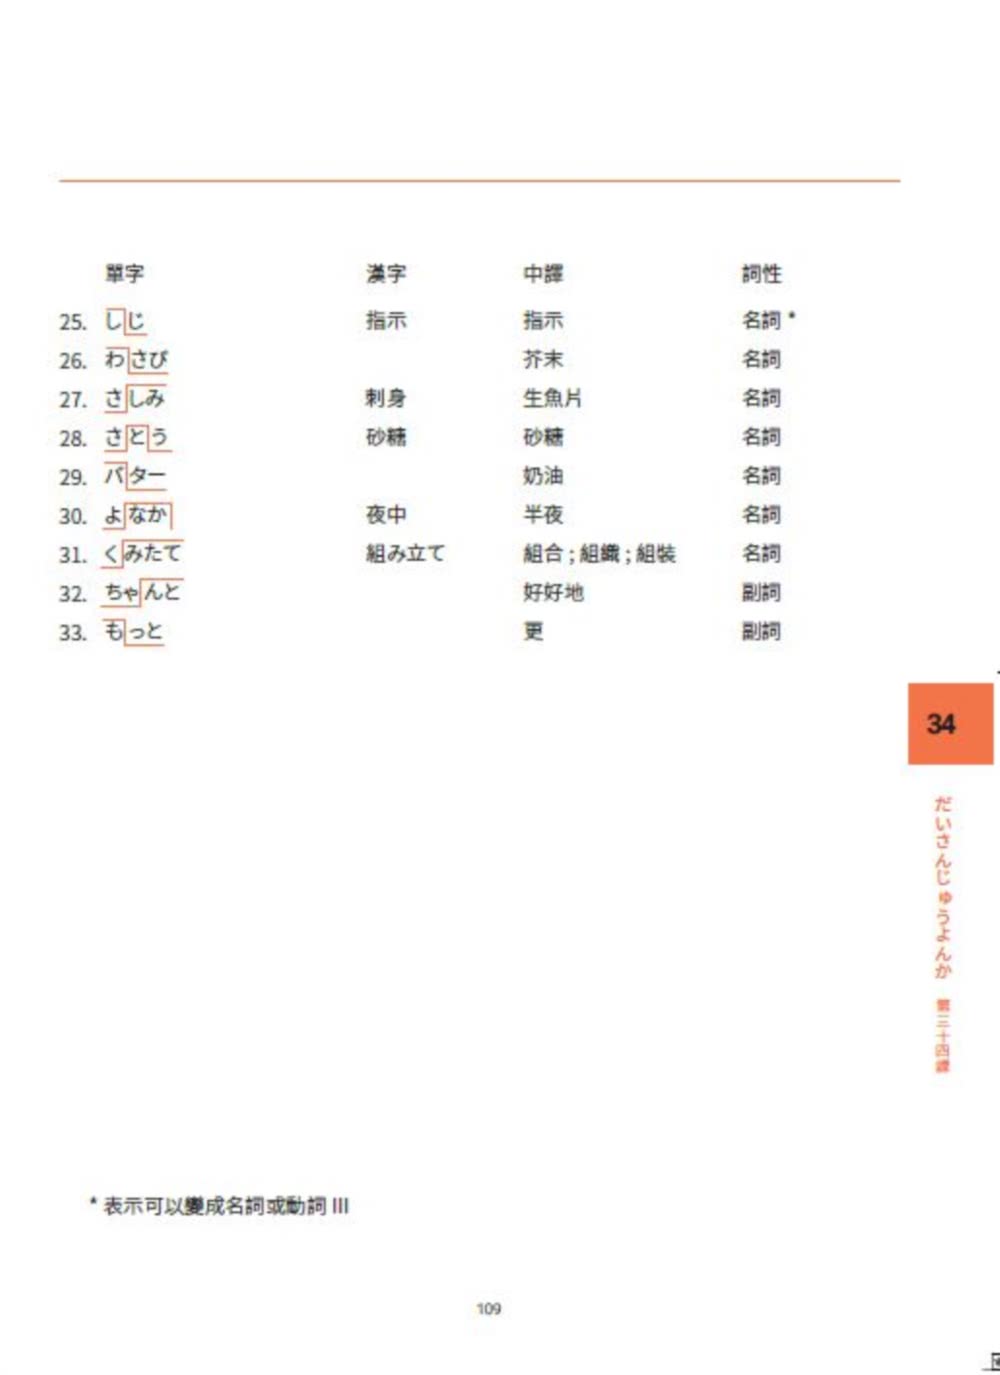 大家一起學習日文吧！王可樂日語初級直達車3：詳盡文法、大量練習題、豐富附錄